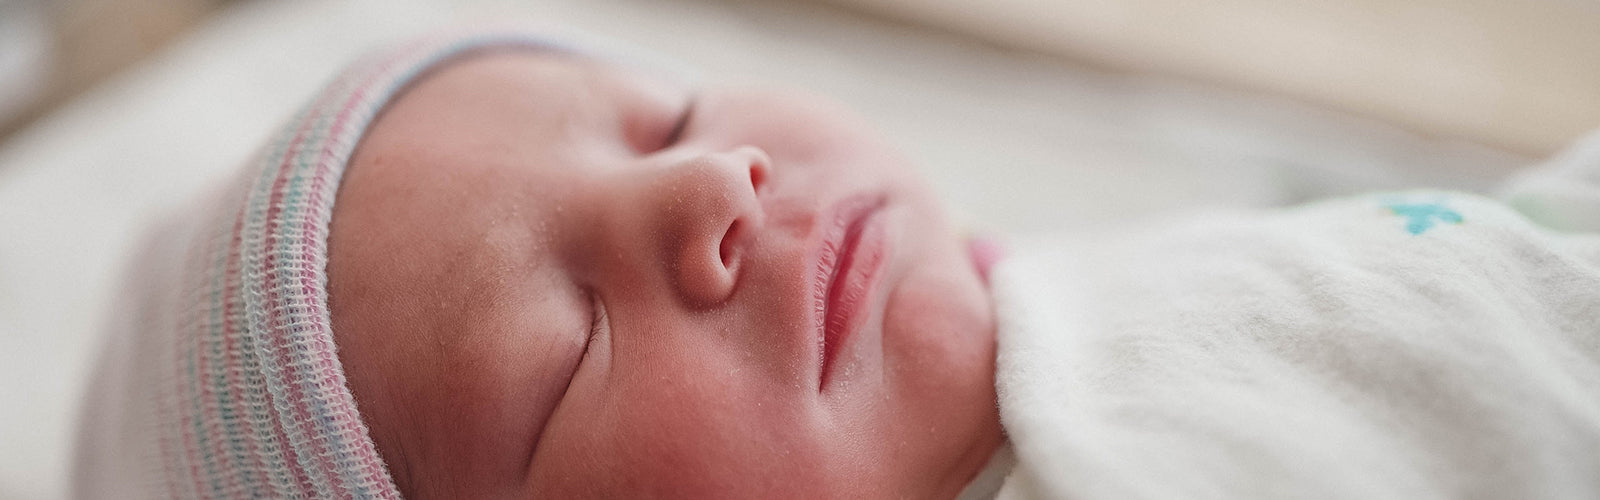 11 Weird, but normal newborn baby characteristics